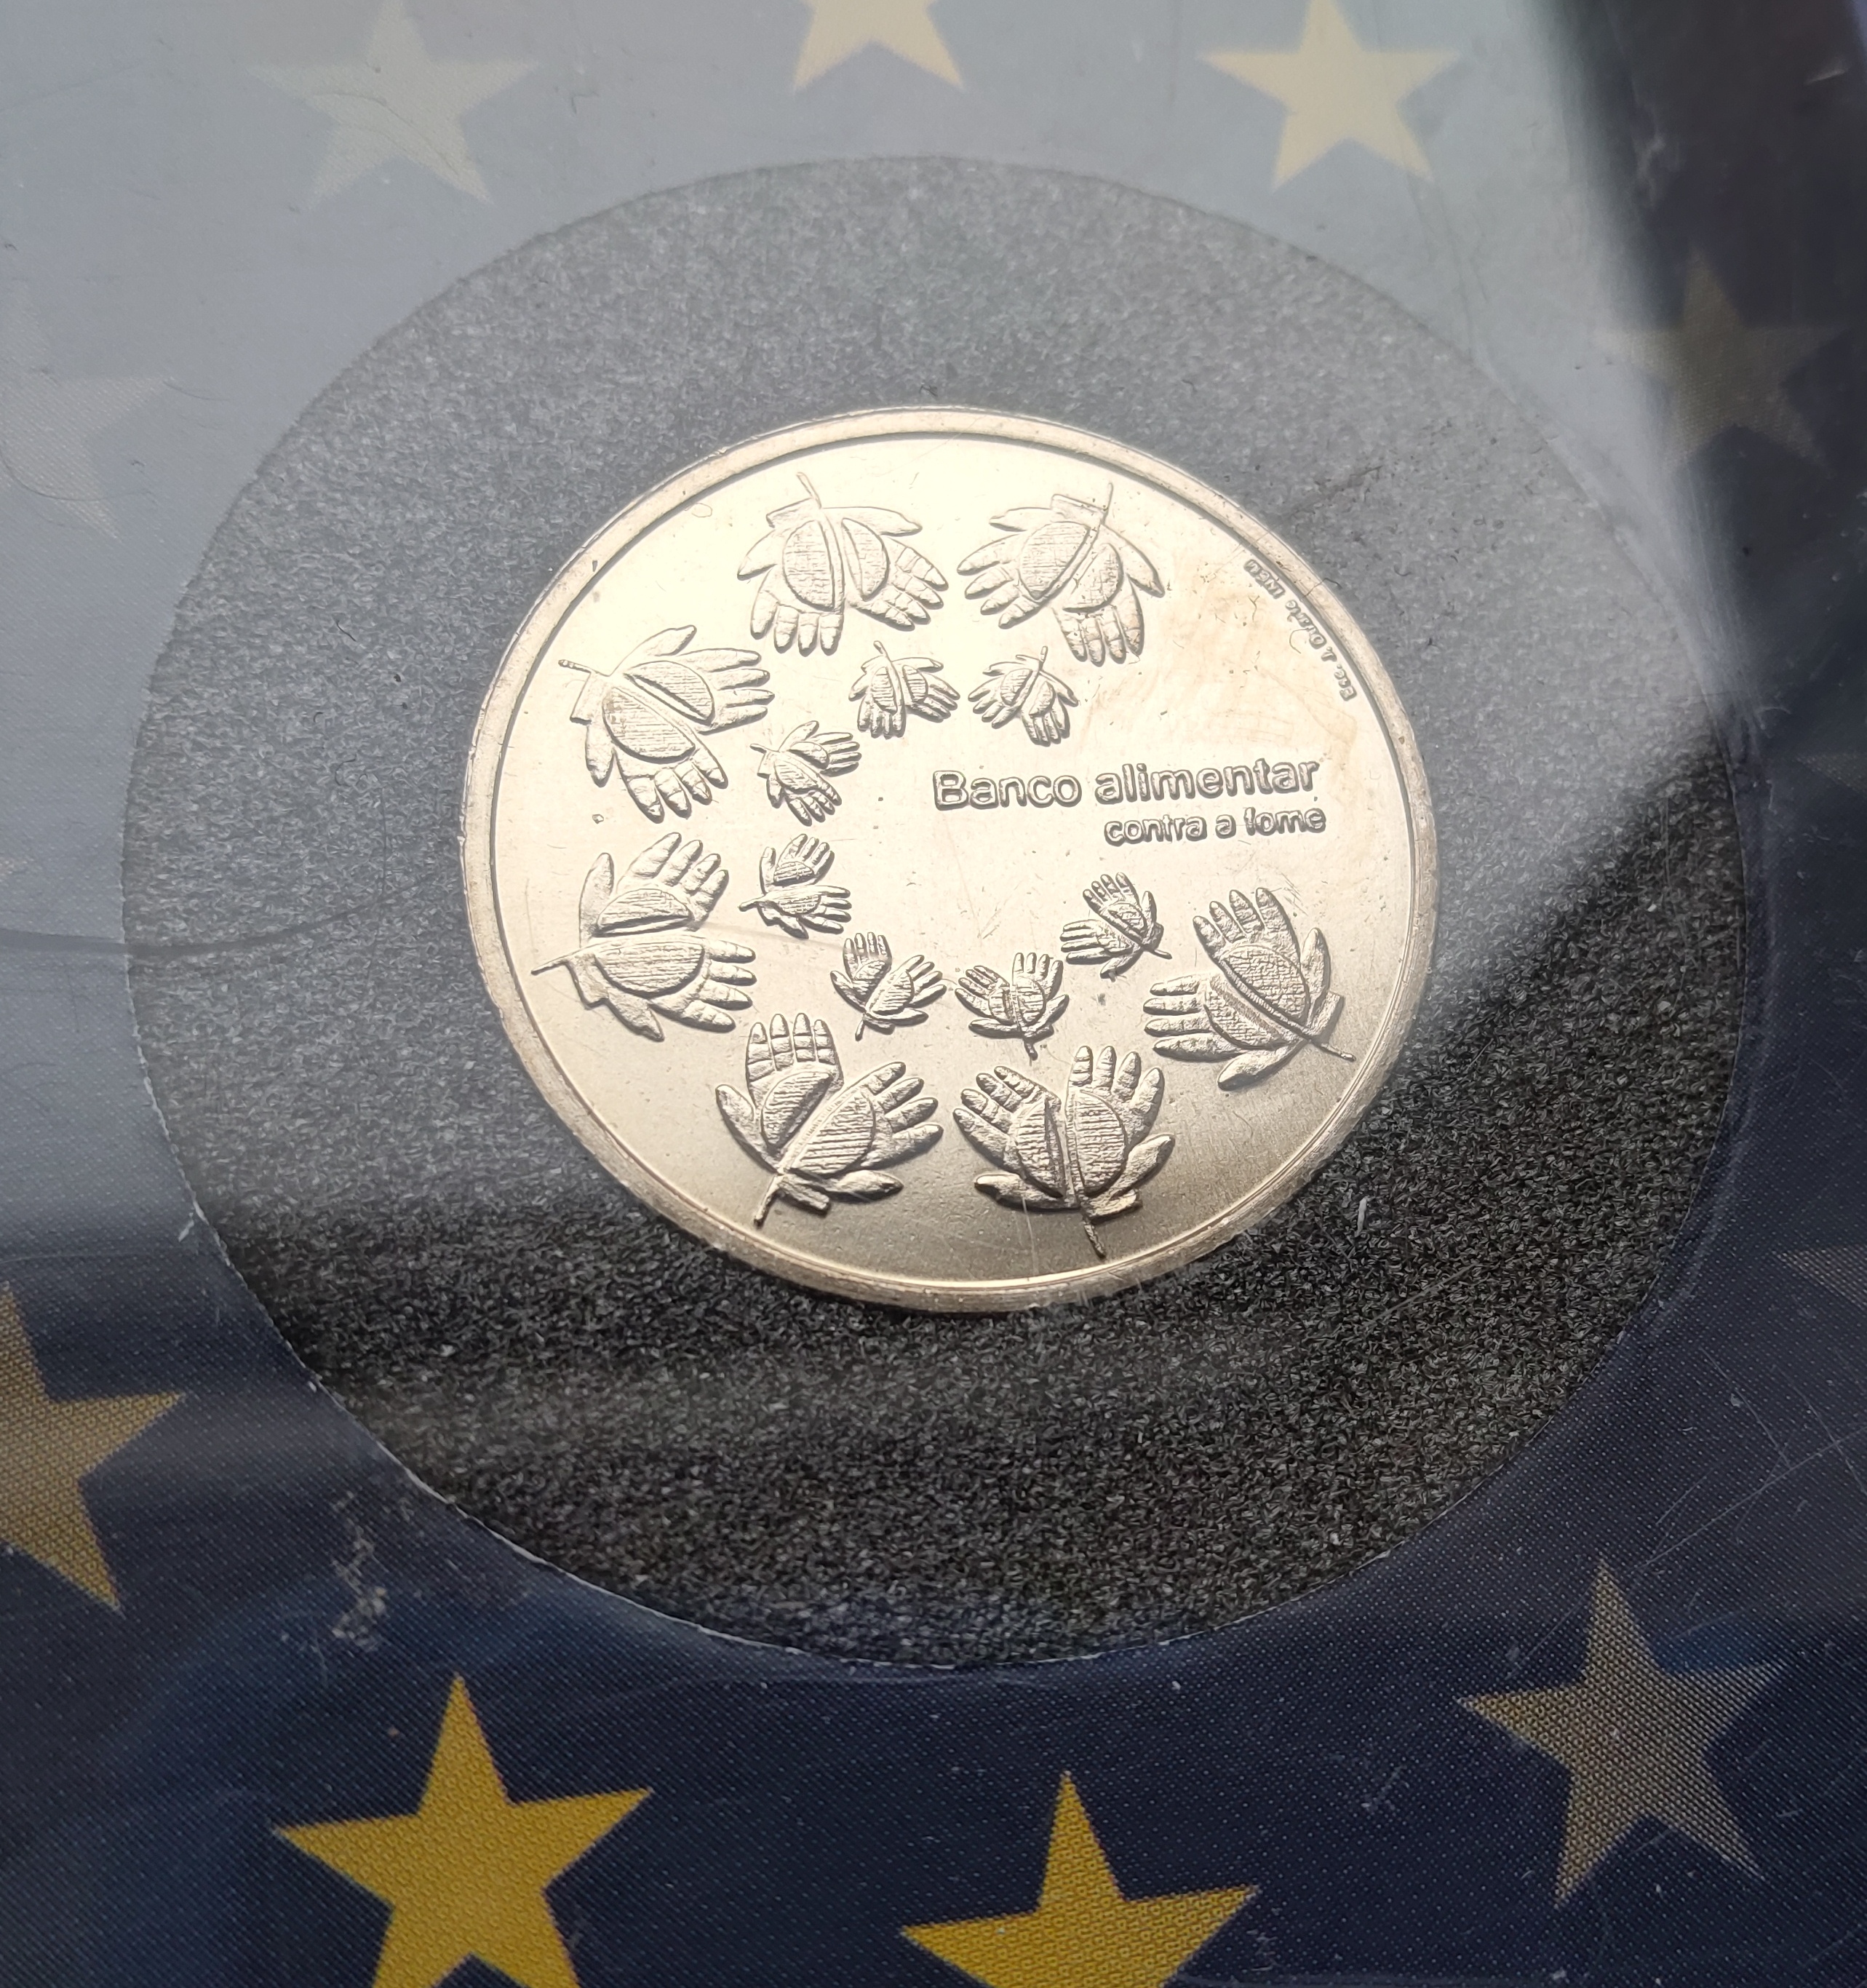 1,5 euro mince portugalsko 2010 - Limitovana edice